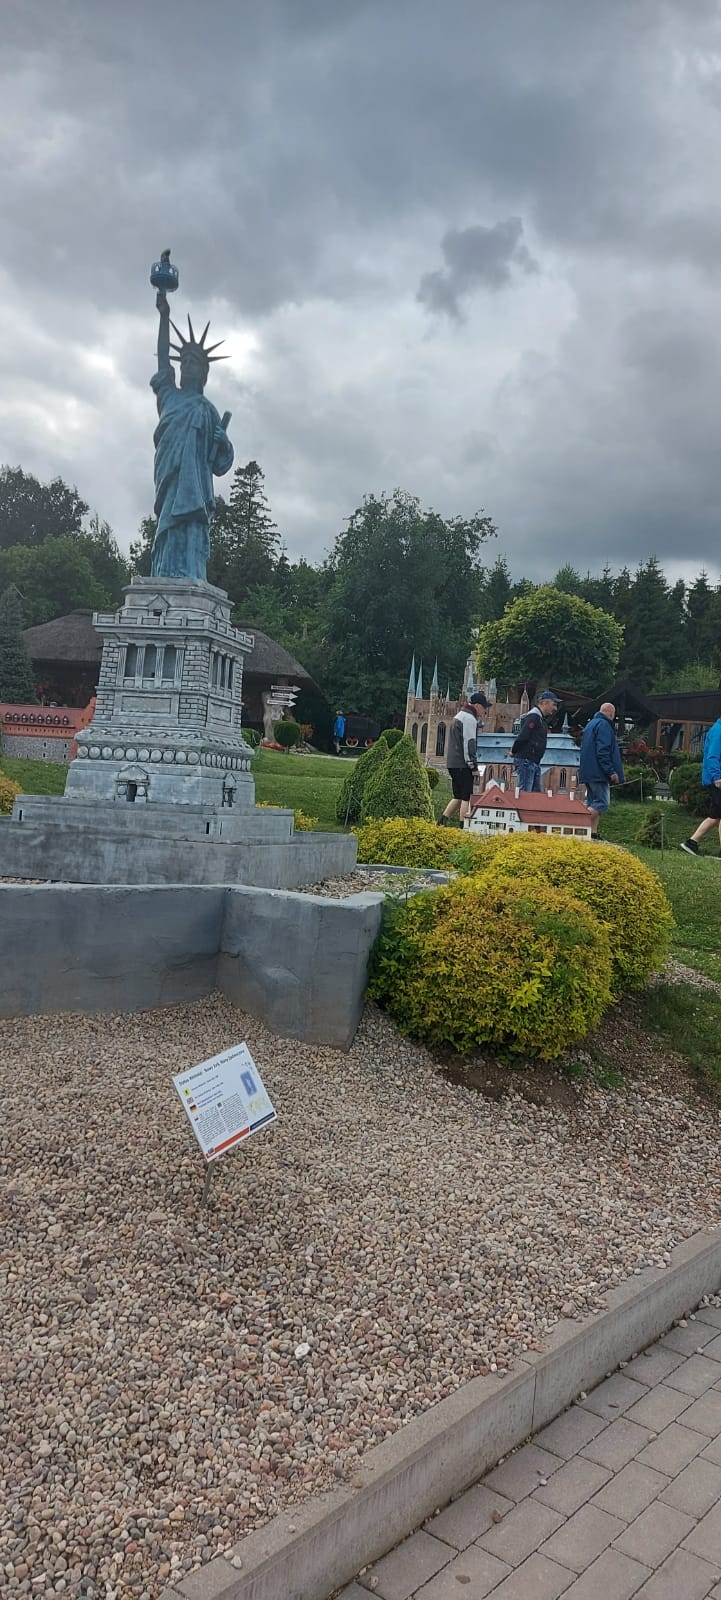 Miniaturowa rzeźba statuy Wolności w tle mieszkańcy idący przy innych rzeźbach.